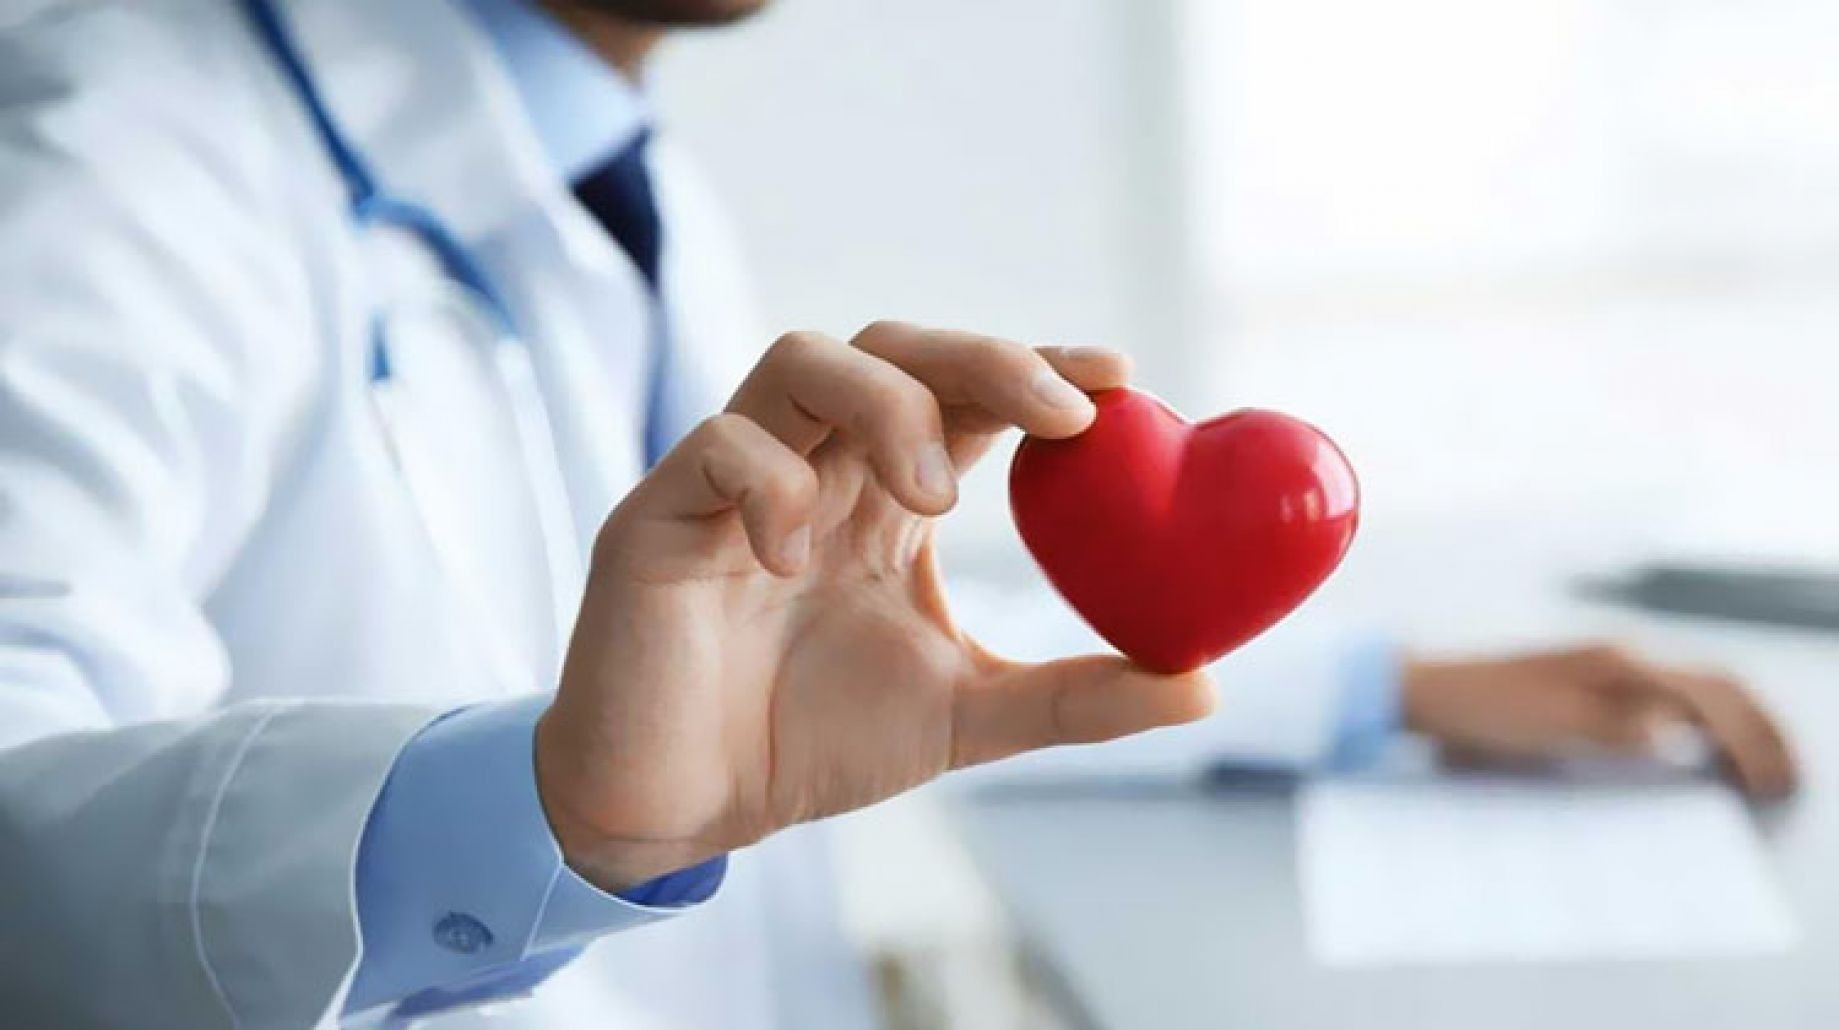 لمن هم فوق سن الـ70.. استشاري يوضح 4 عادات تحافظ على صحة القلب